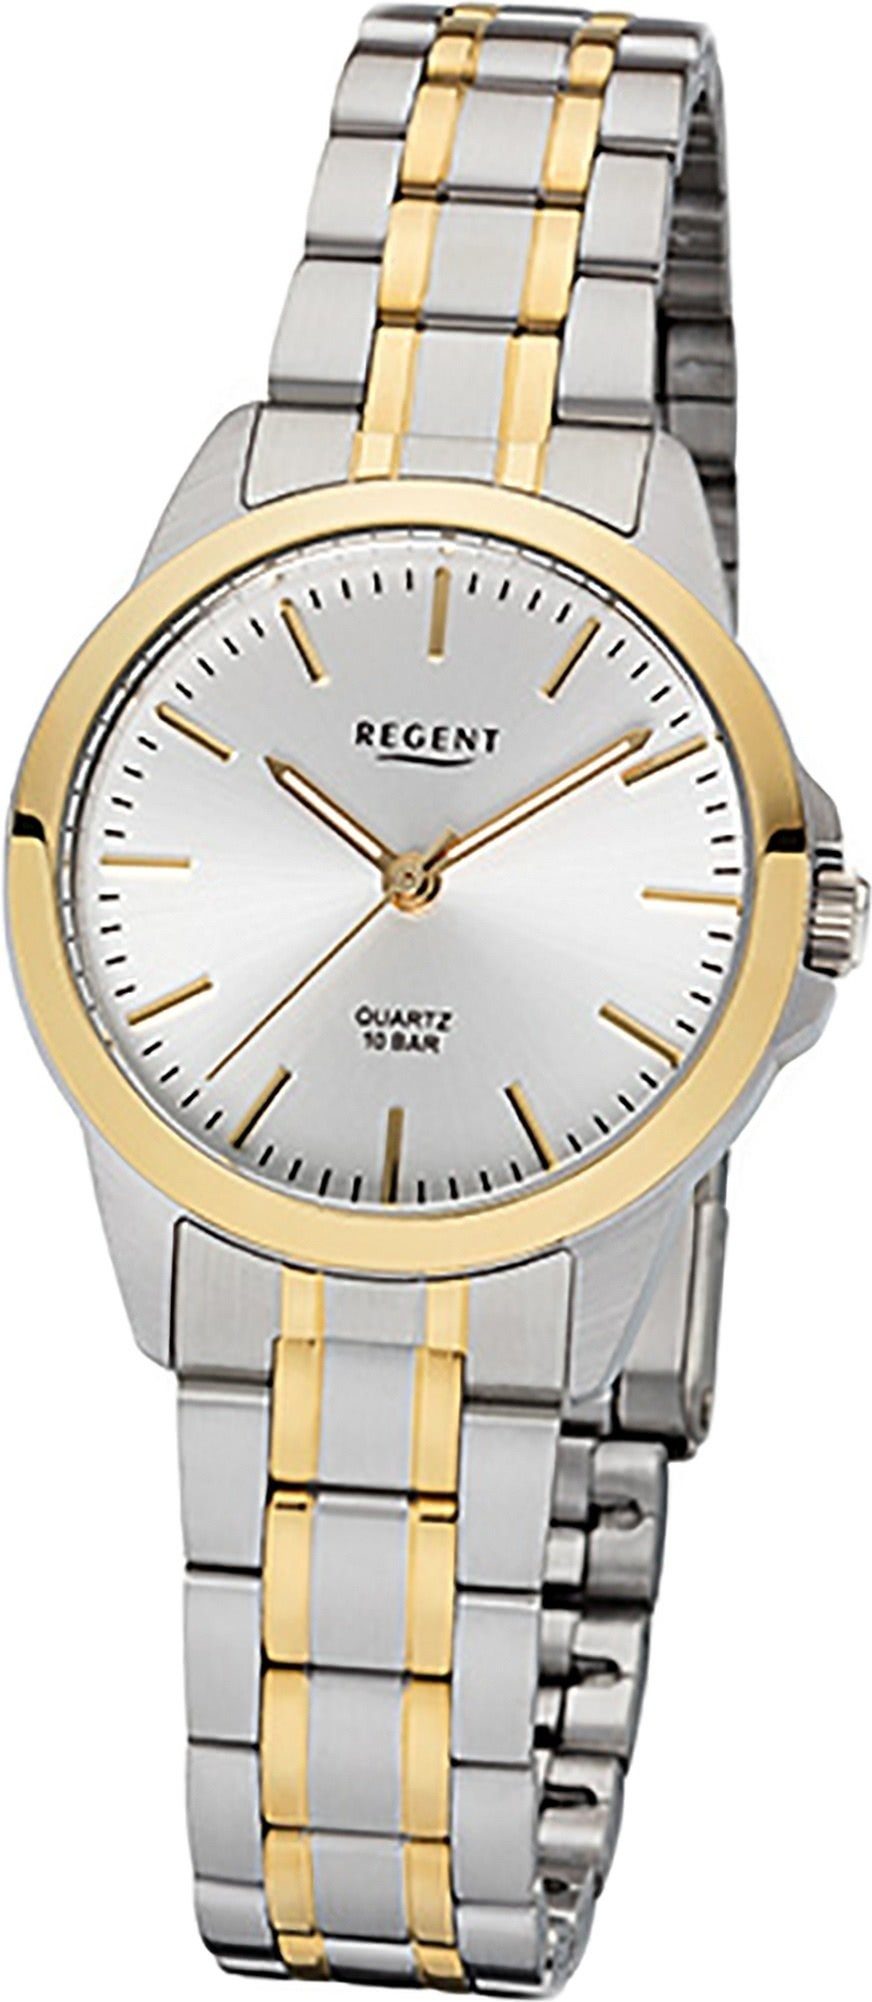 Regent Quarzuhr Regent Edelstahl Damen gold, klein Edelstahlarmband Uhr (29mm) rundes F-1005 Damenuhr silber, Gehäuse, Quarz